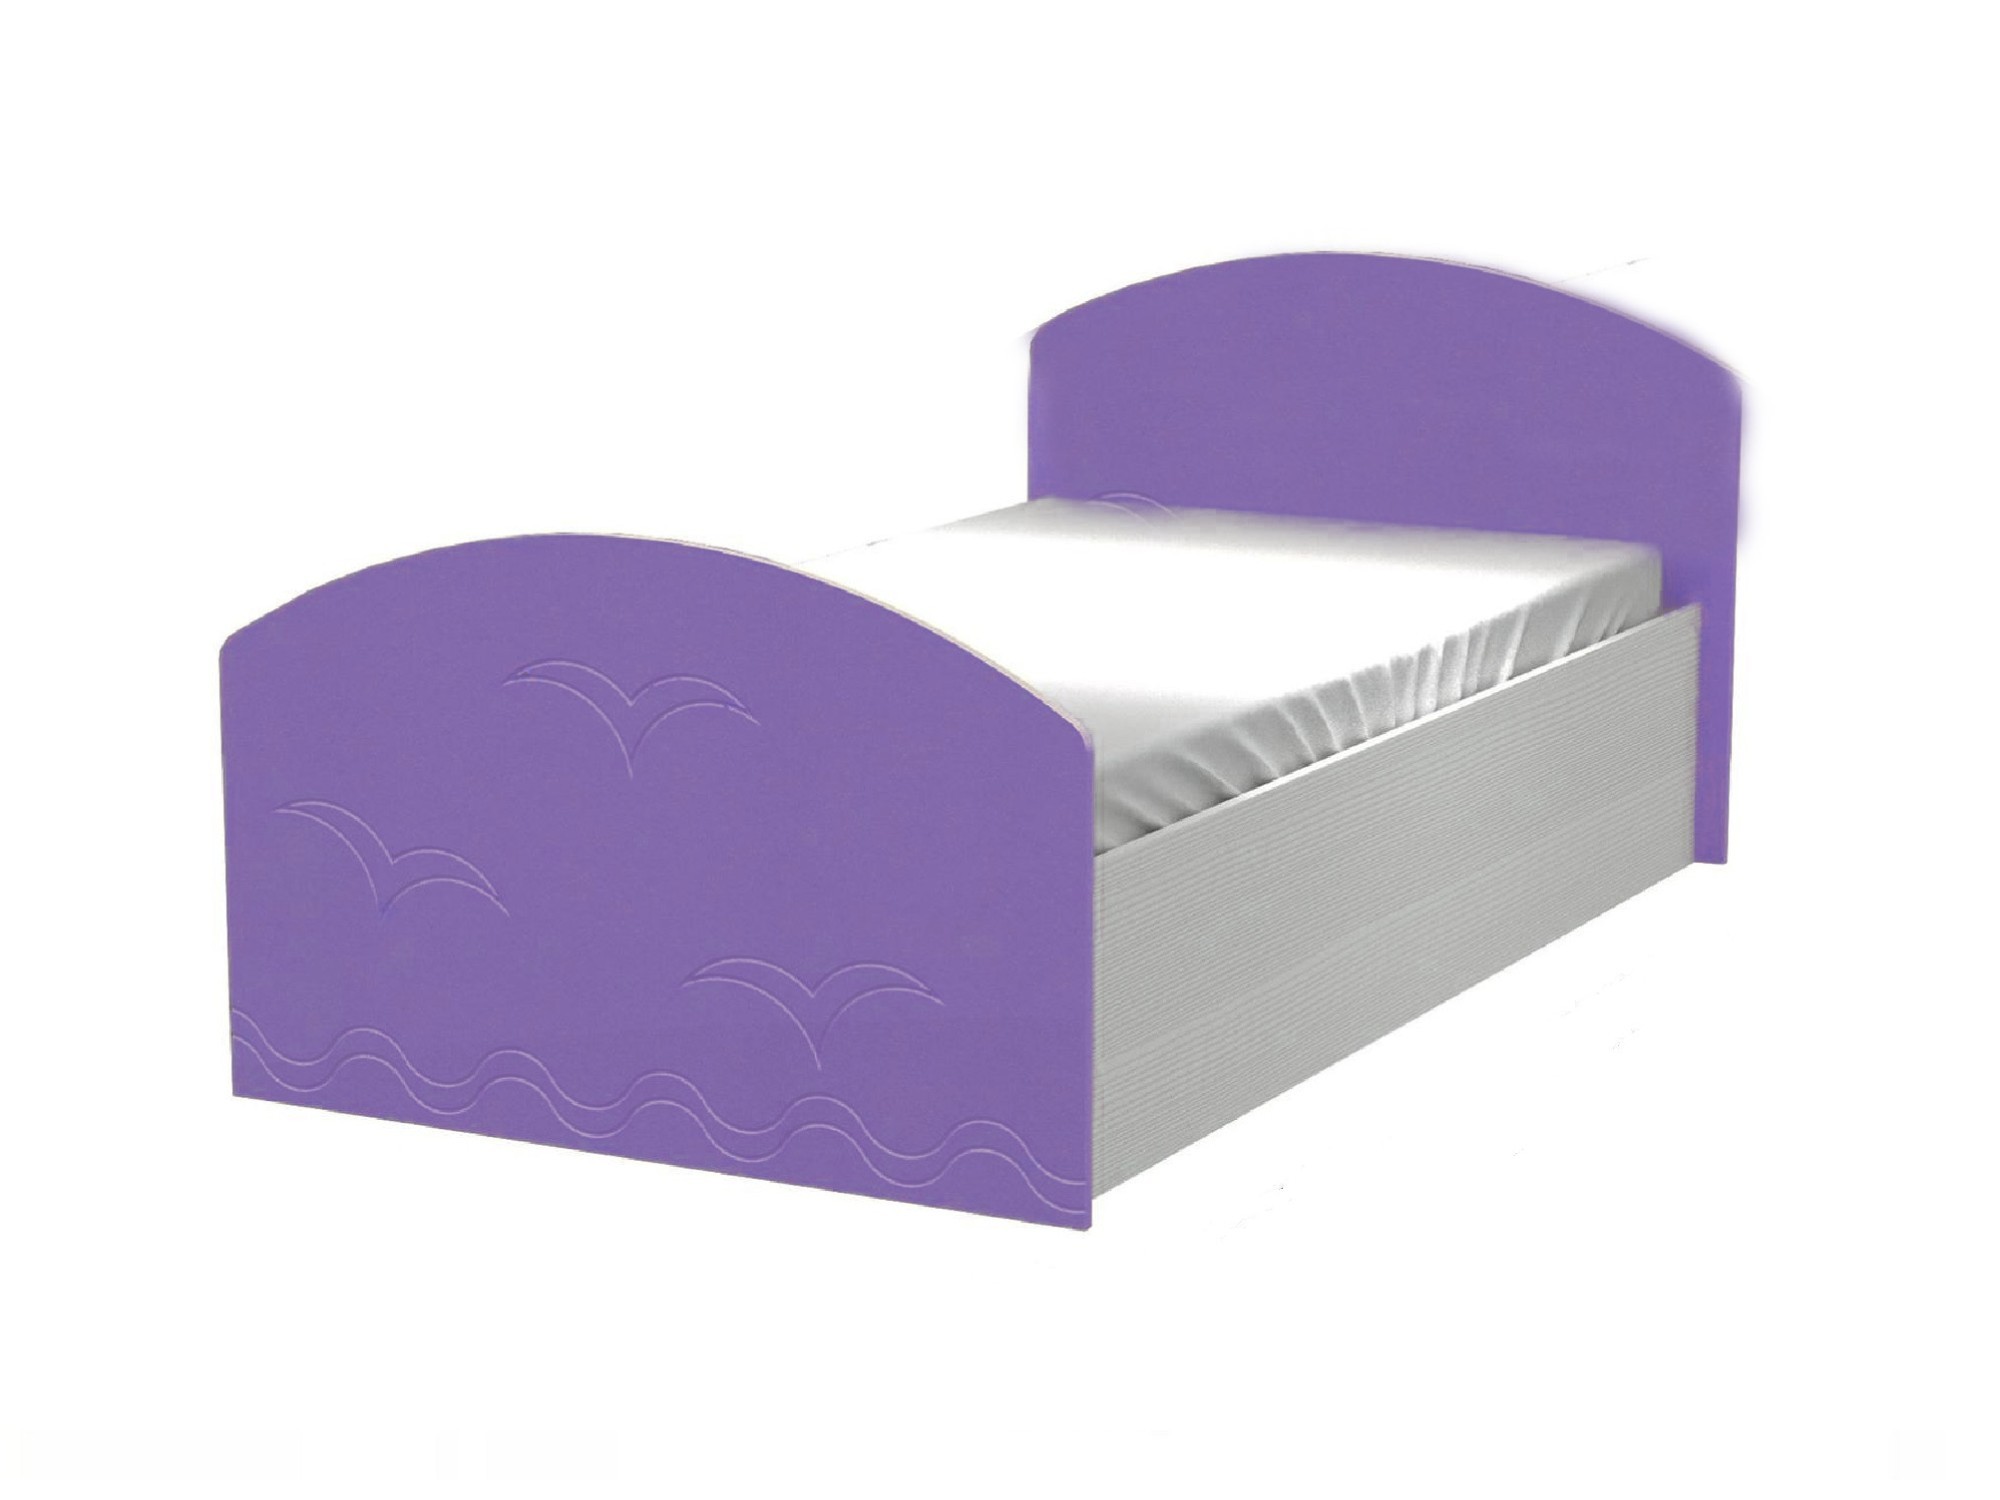 Юниор-2 Детская кровать 80, металлик (Сиреневый металлик, Дуб белёный) Дуб белёный, МДФ, ЛДСП юниор 2 детская кровать 80 металлик фиолетовый металлик дуб белёный фиолетовый металлик мдф лдсп